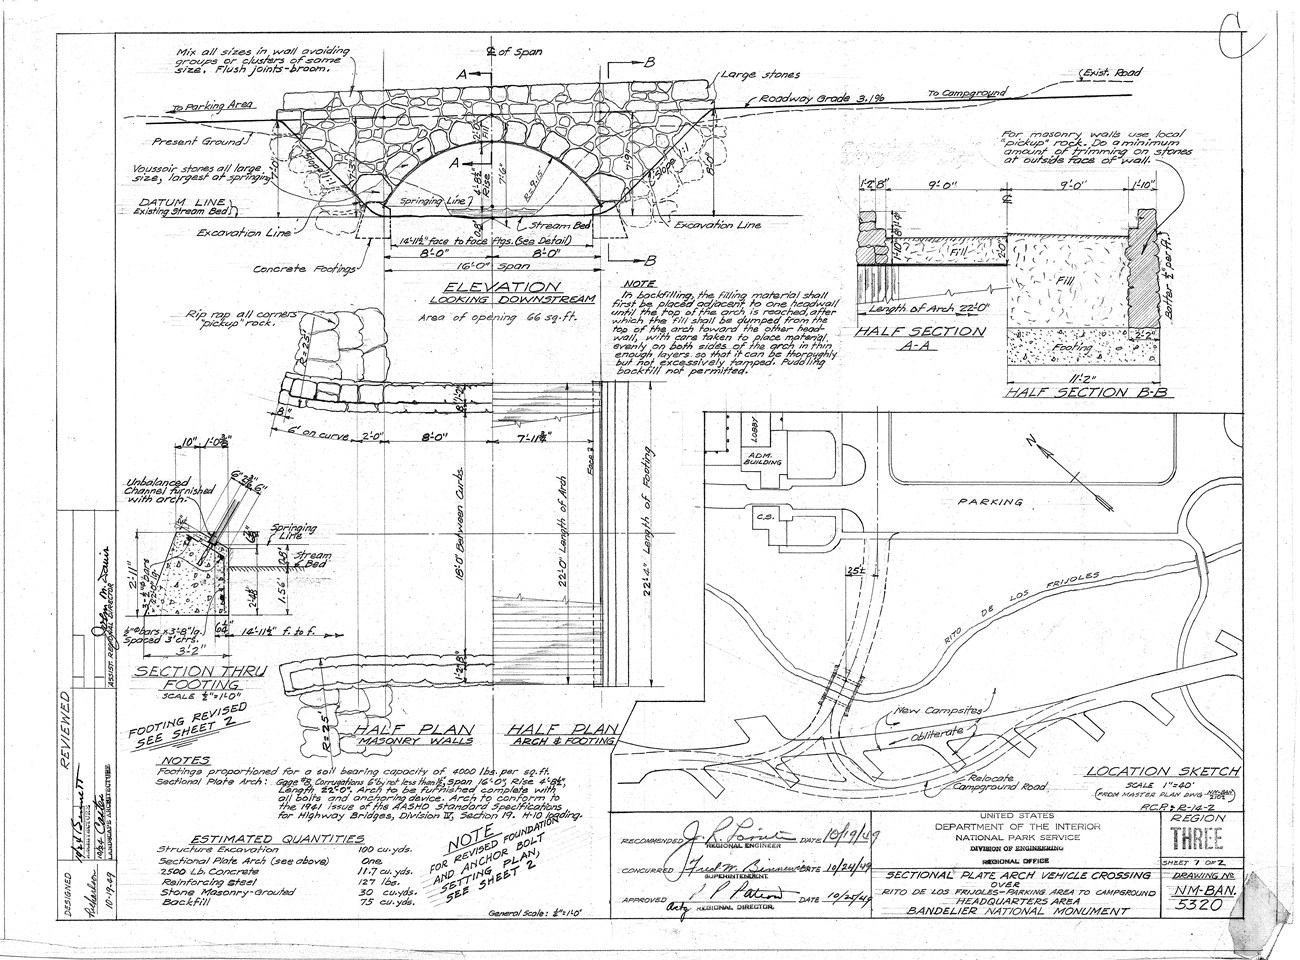 HABS drawing of motor bridge